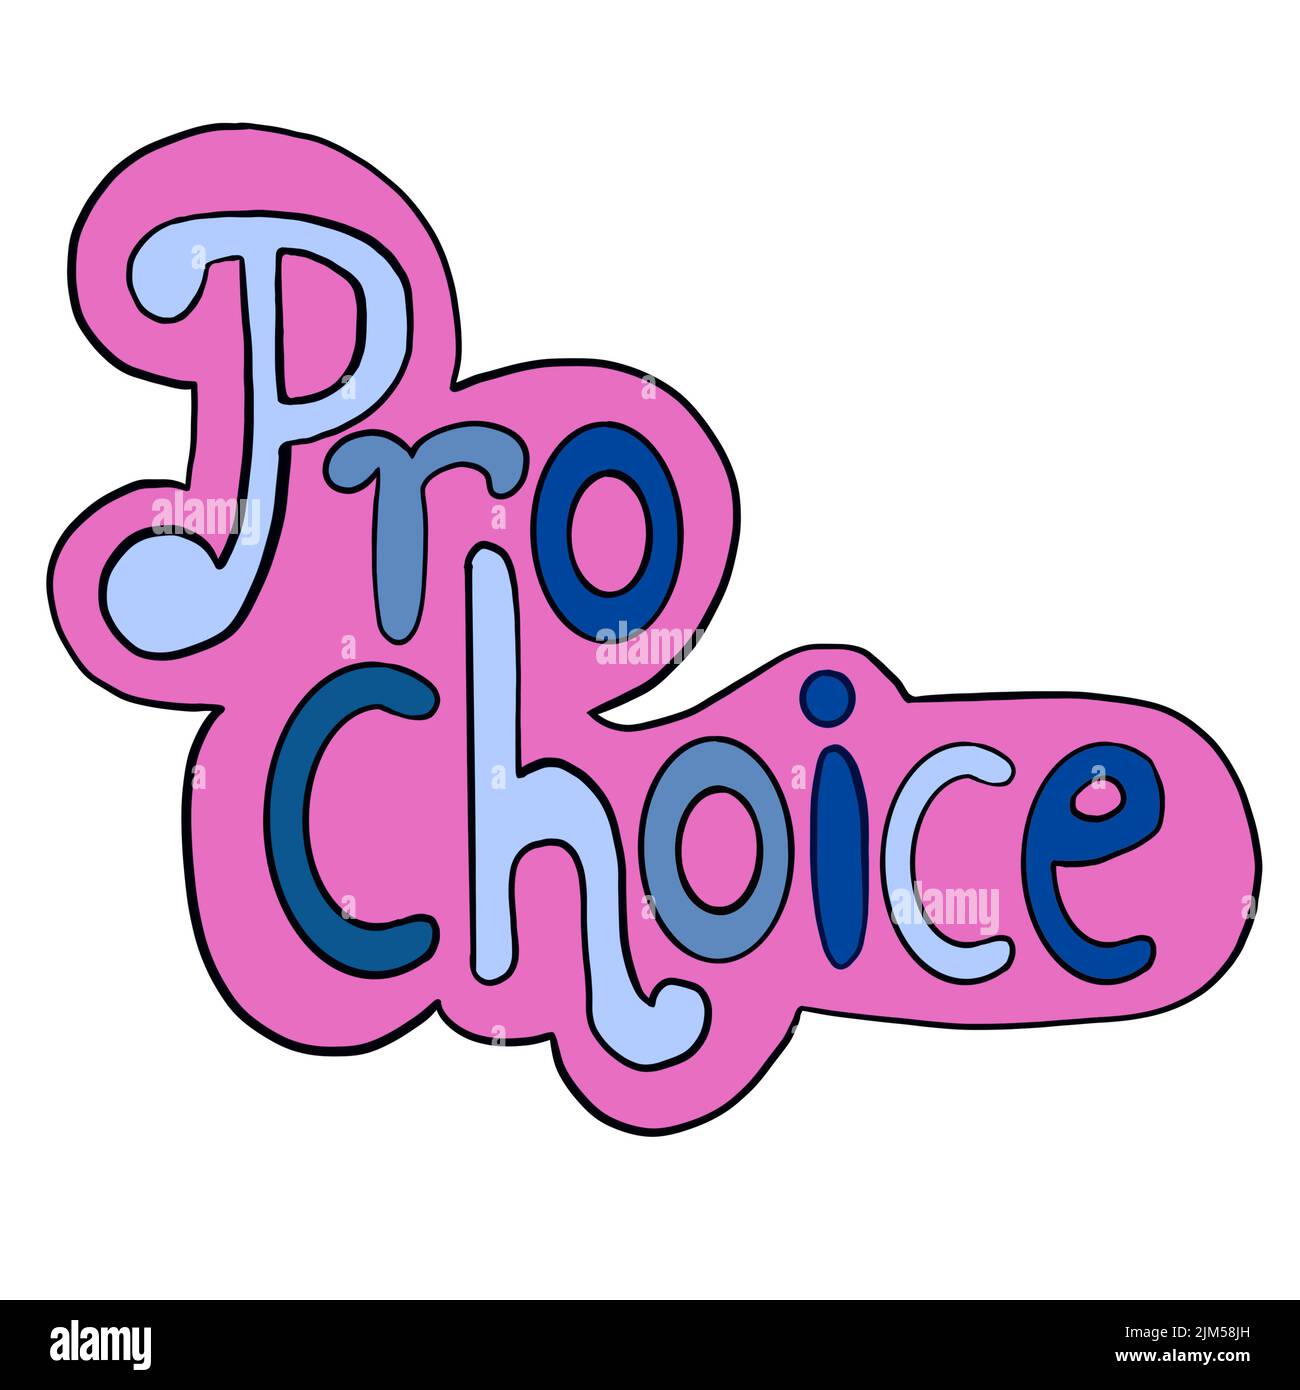 Parole Pro Choice in stile adesivi blu rosa. Illustrazione disegnata a mano per i diritti di aborto riproduttivo, concetto femminista, femminismo salute roe v wade banner Foto Stock